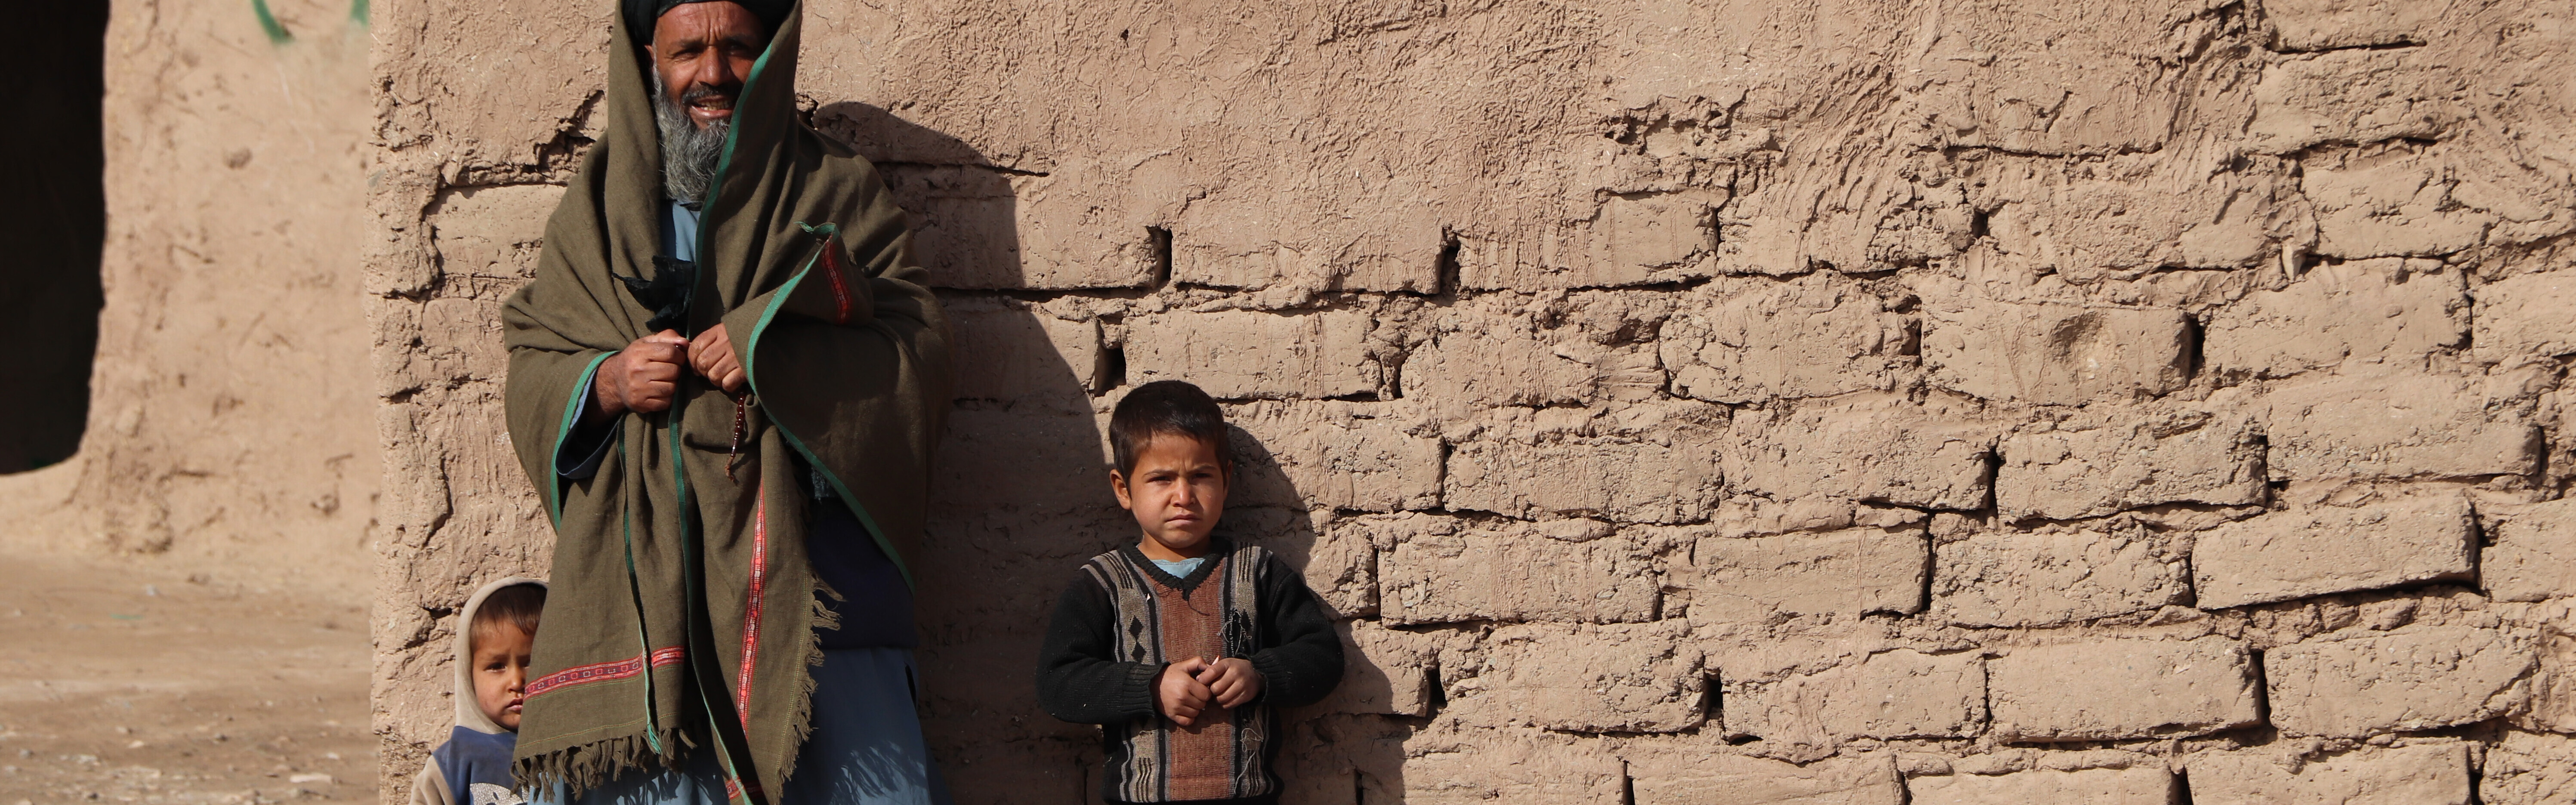 Besonders bedürftige Menschen leiden unter der Krise in Afghanistan, Copyright Help – Hilfe zur Selbsthilfe